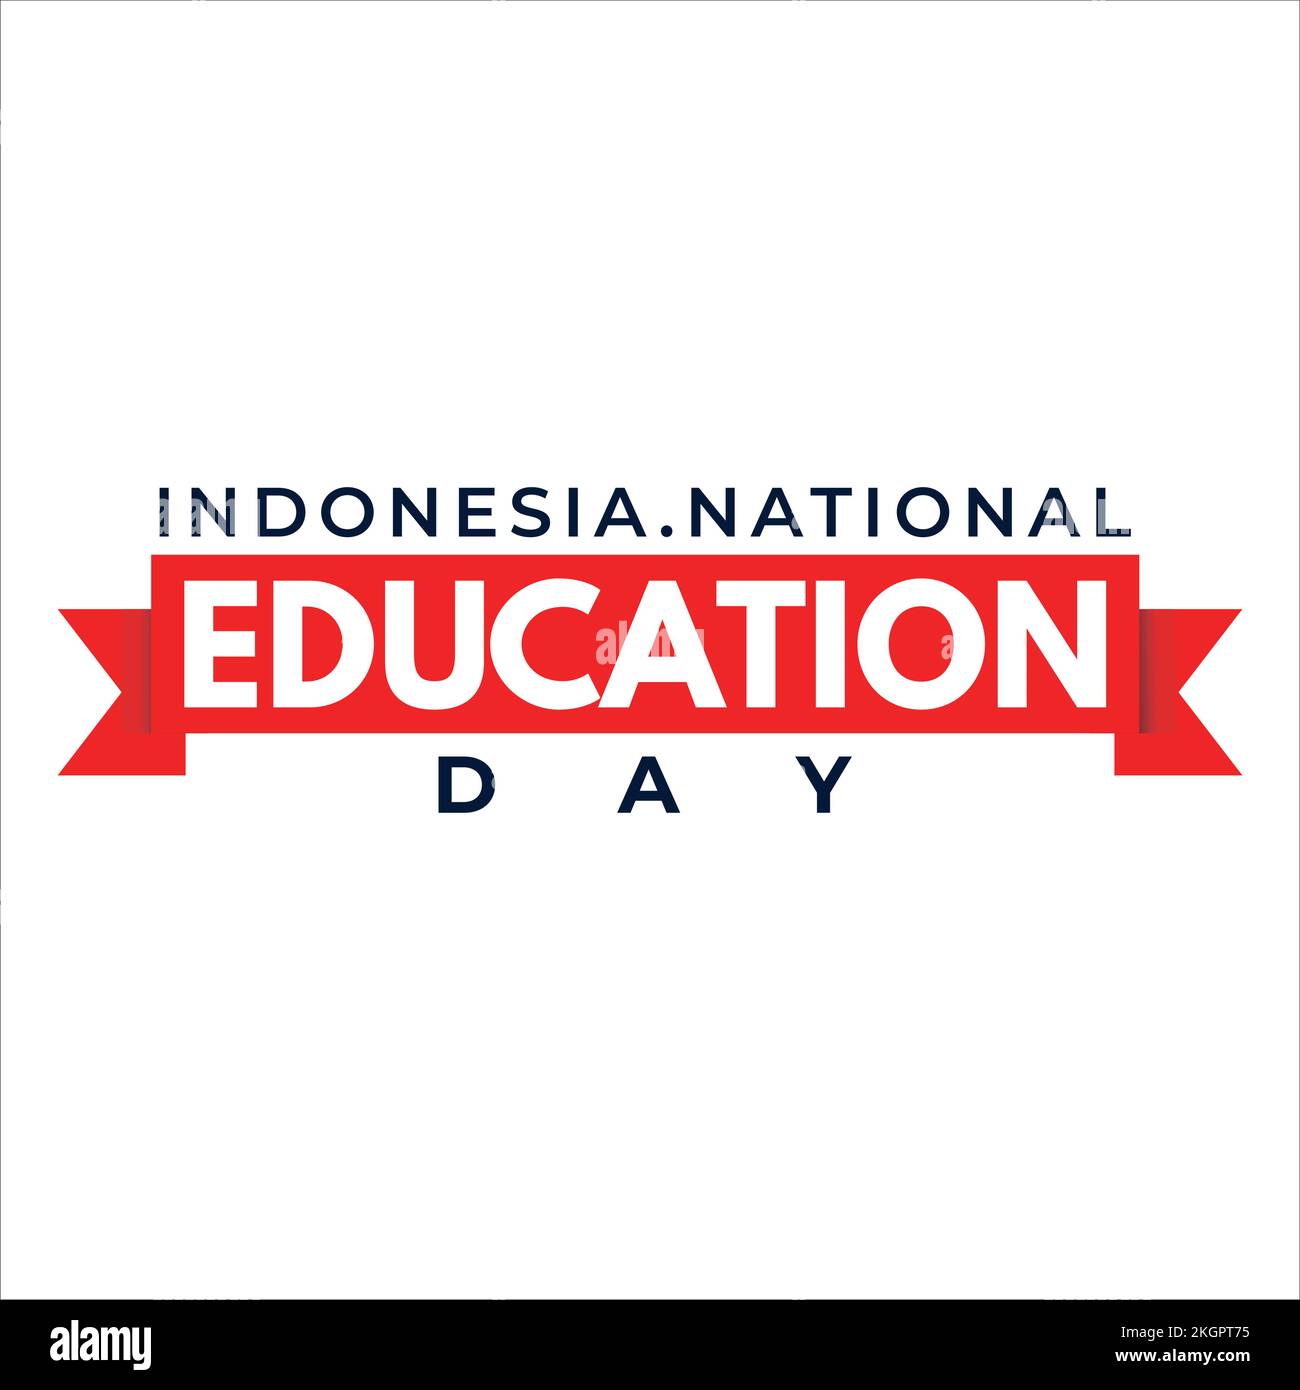 Indonesiano National Education Day bellissimo effetto testo con tonalità rossa, semplice effetto testo su sfondo bianco, Standard Vector Design per Indonesia Illustrazione Vettoriale